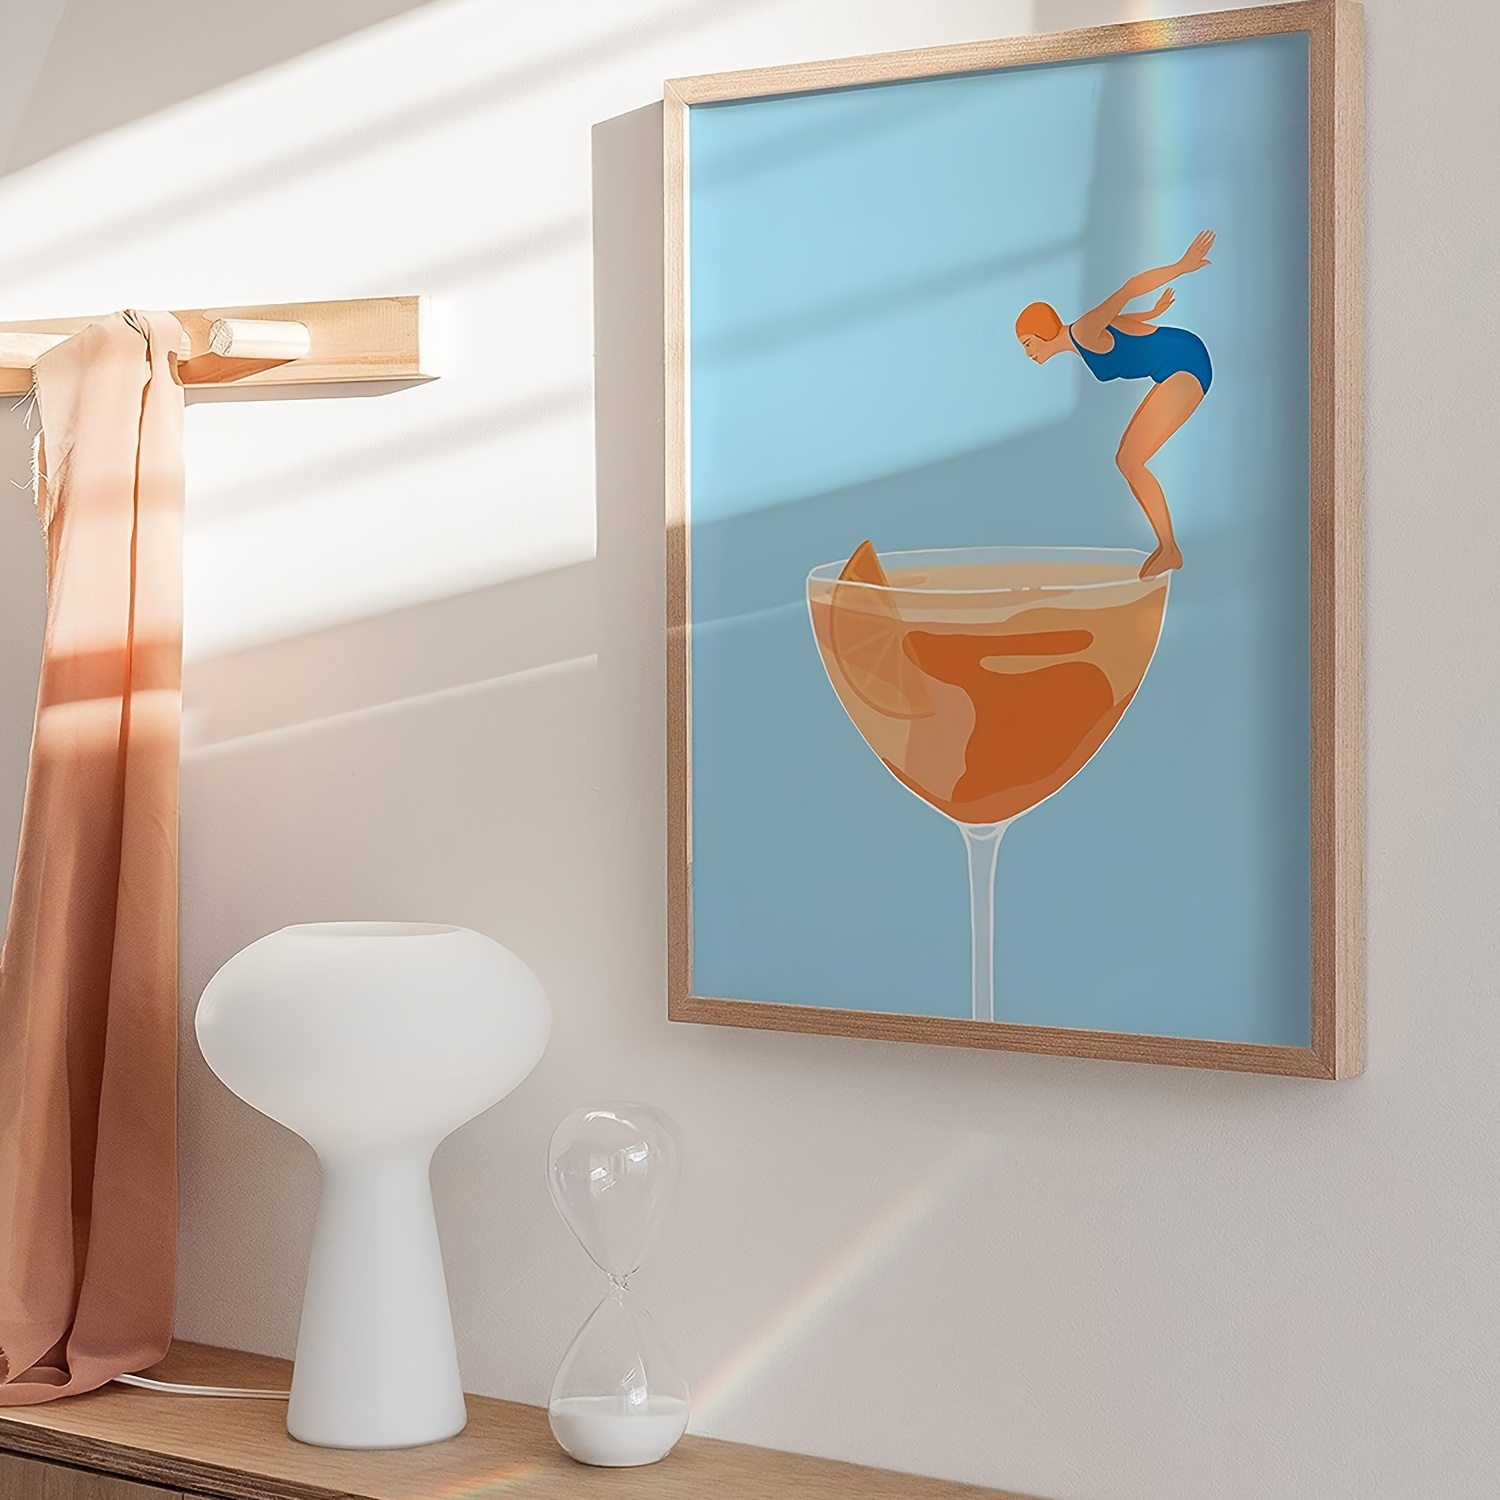 Aperol Spritz Cocktail Art Print, Affiche de cuisine colorée rétro